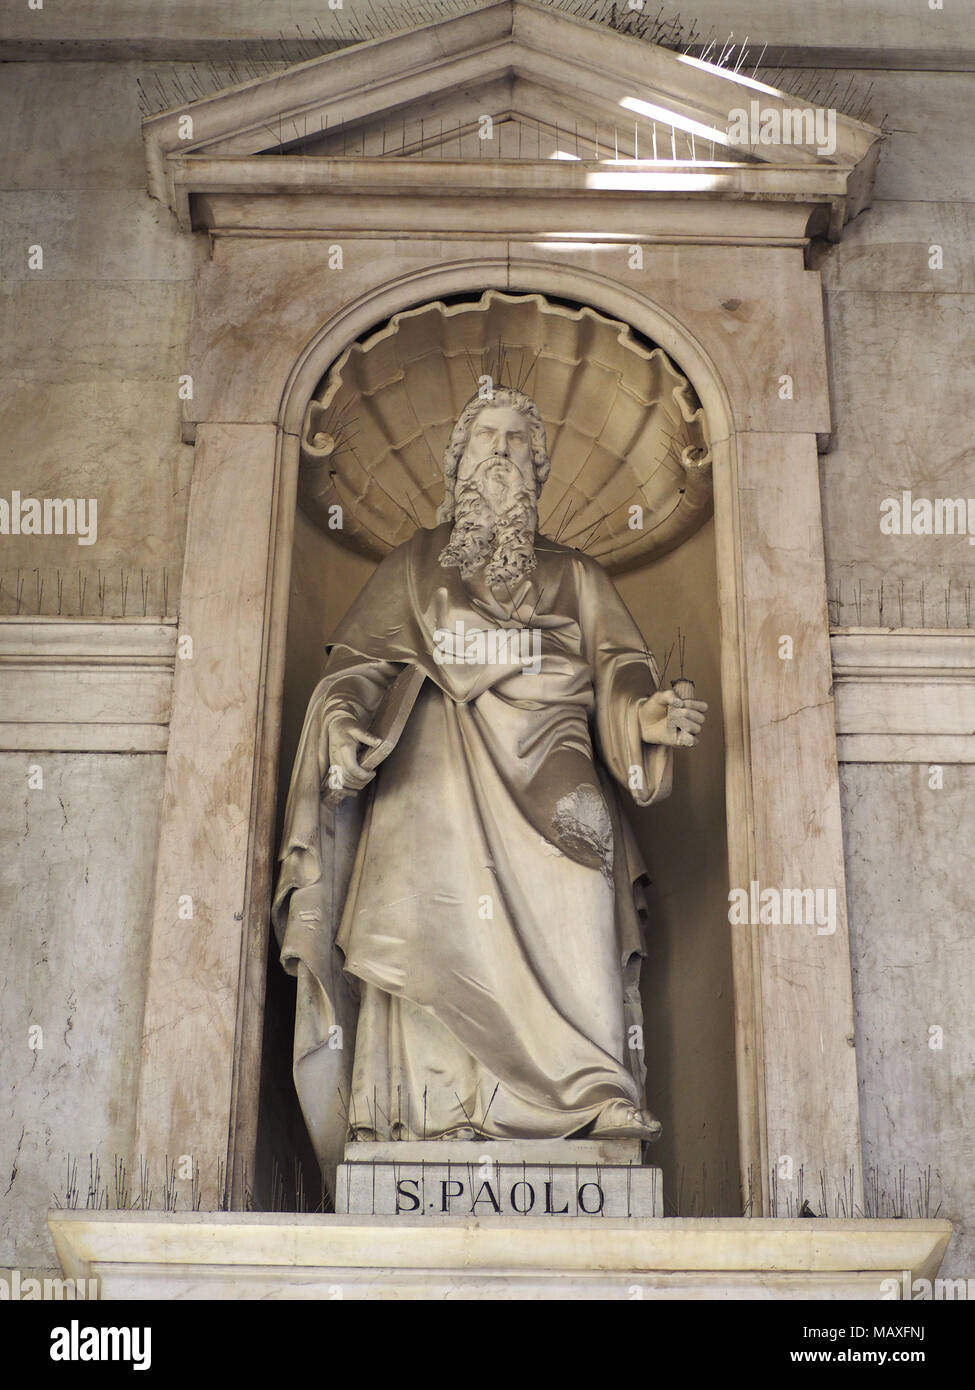 Torino, Italia - circa gennaio 2018: San Paolo statua (San Paolo in italiano) al di fuori della Santissima Annunziata chiesa parrocchiale Foto Stock